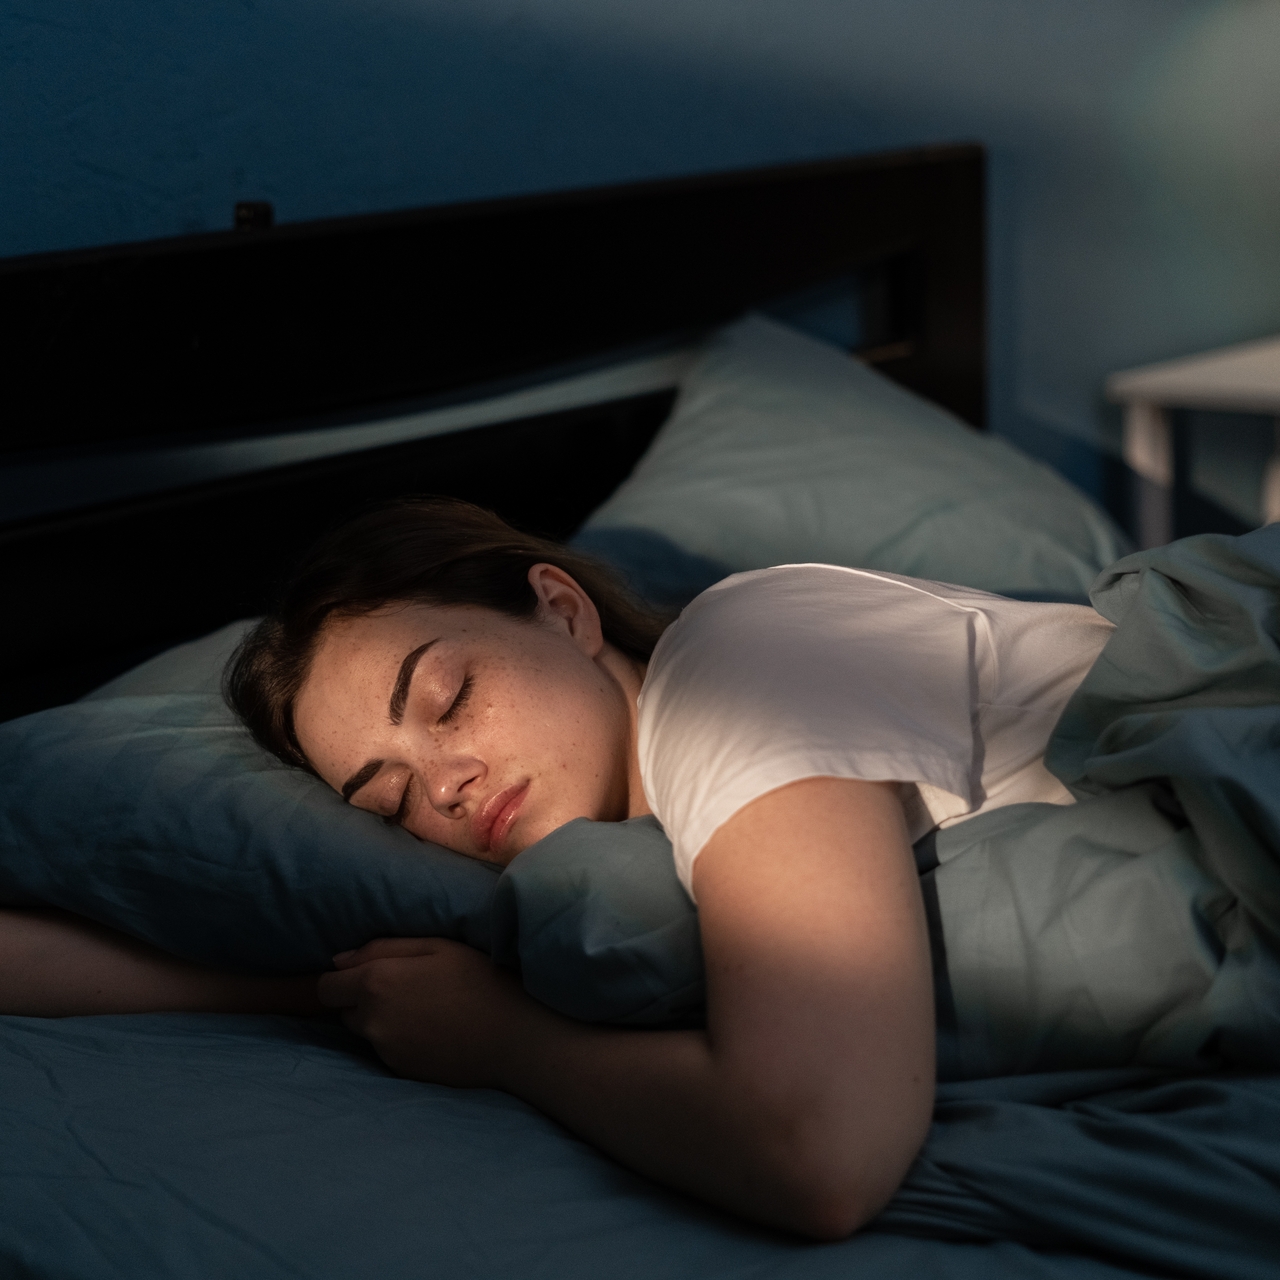 Hastalık riskini artıran uyku alışkanlıkları açıklandı